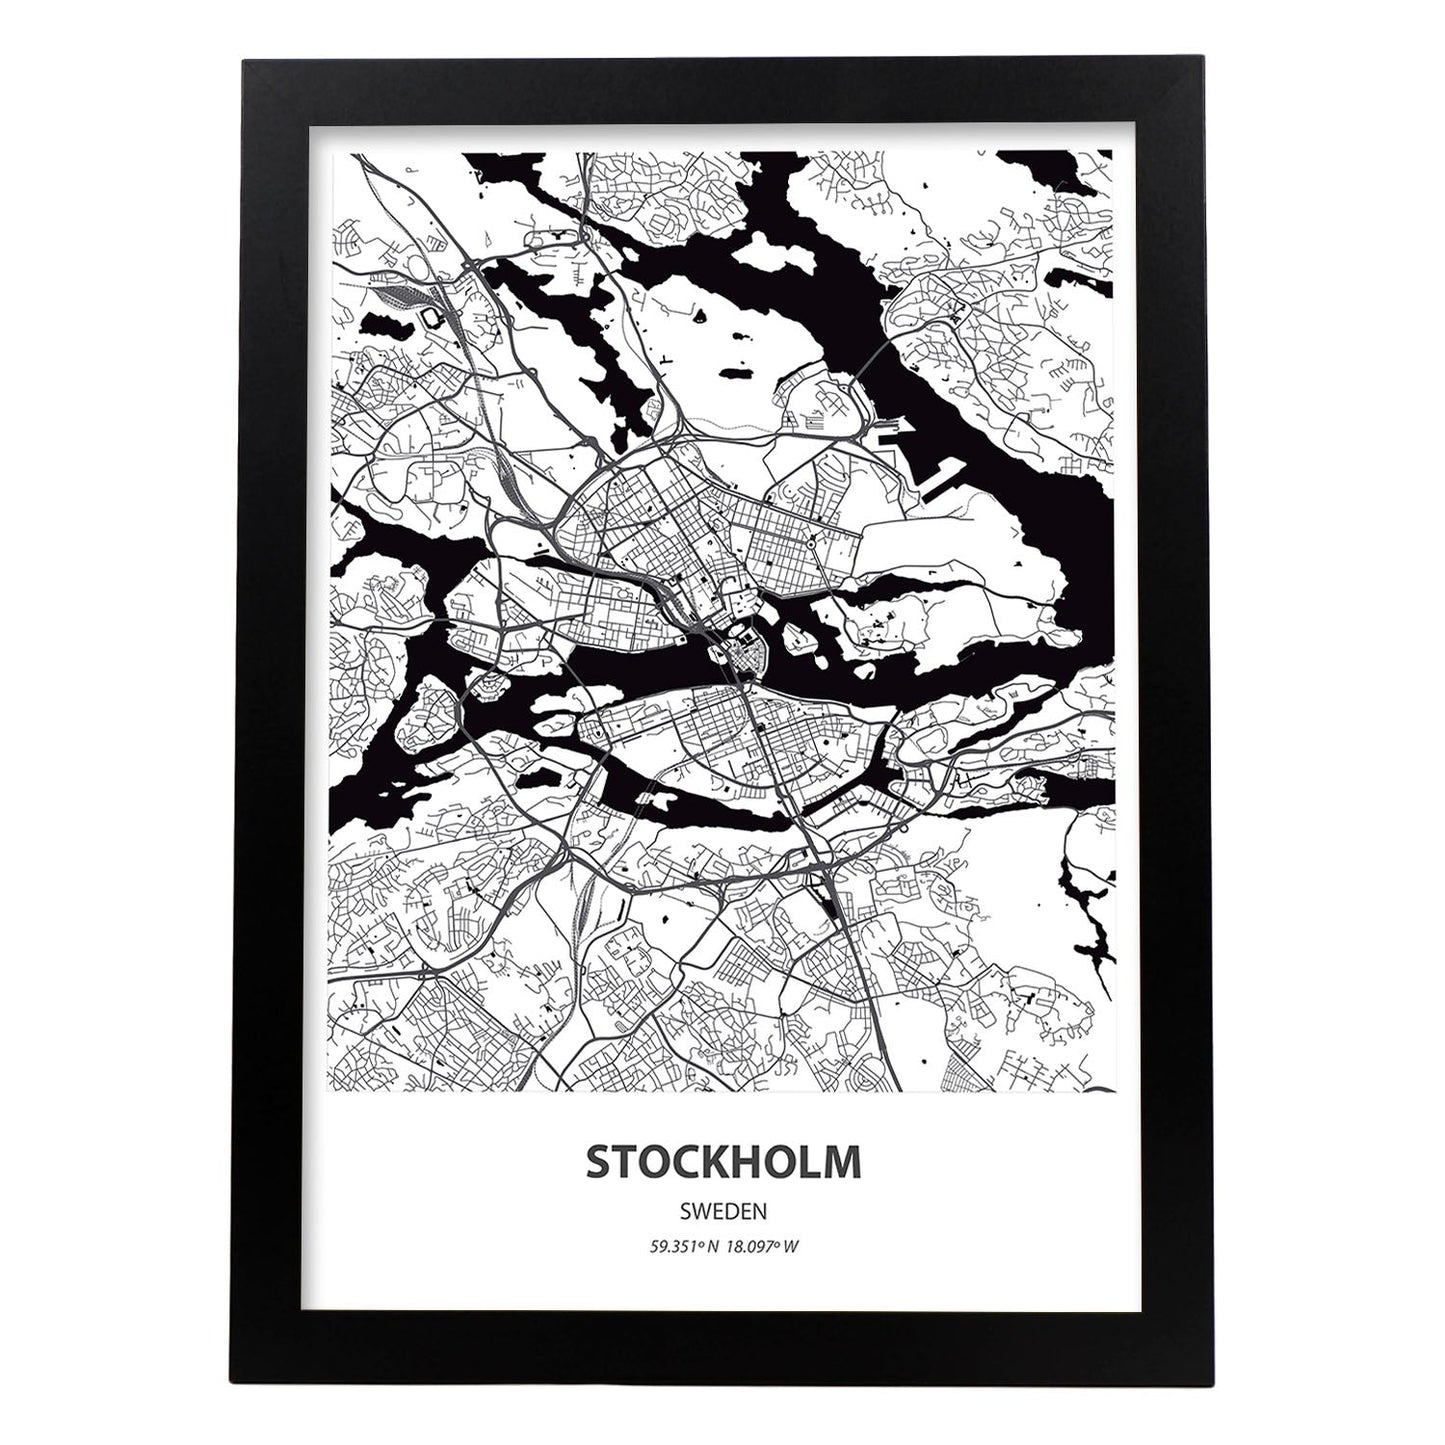 Poster con mapa de Stockholm - Suecia. Láminas de ciudades del norte de Europa con mares y ríos en color negro.-Artwork-Nacnic-A3-Marco Negro-Nacnic Estudio SL